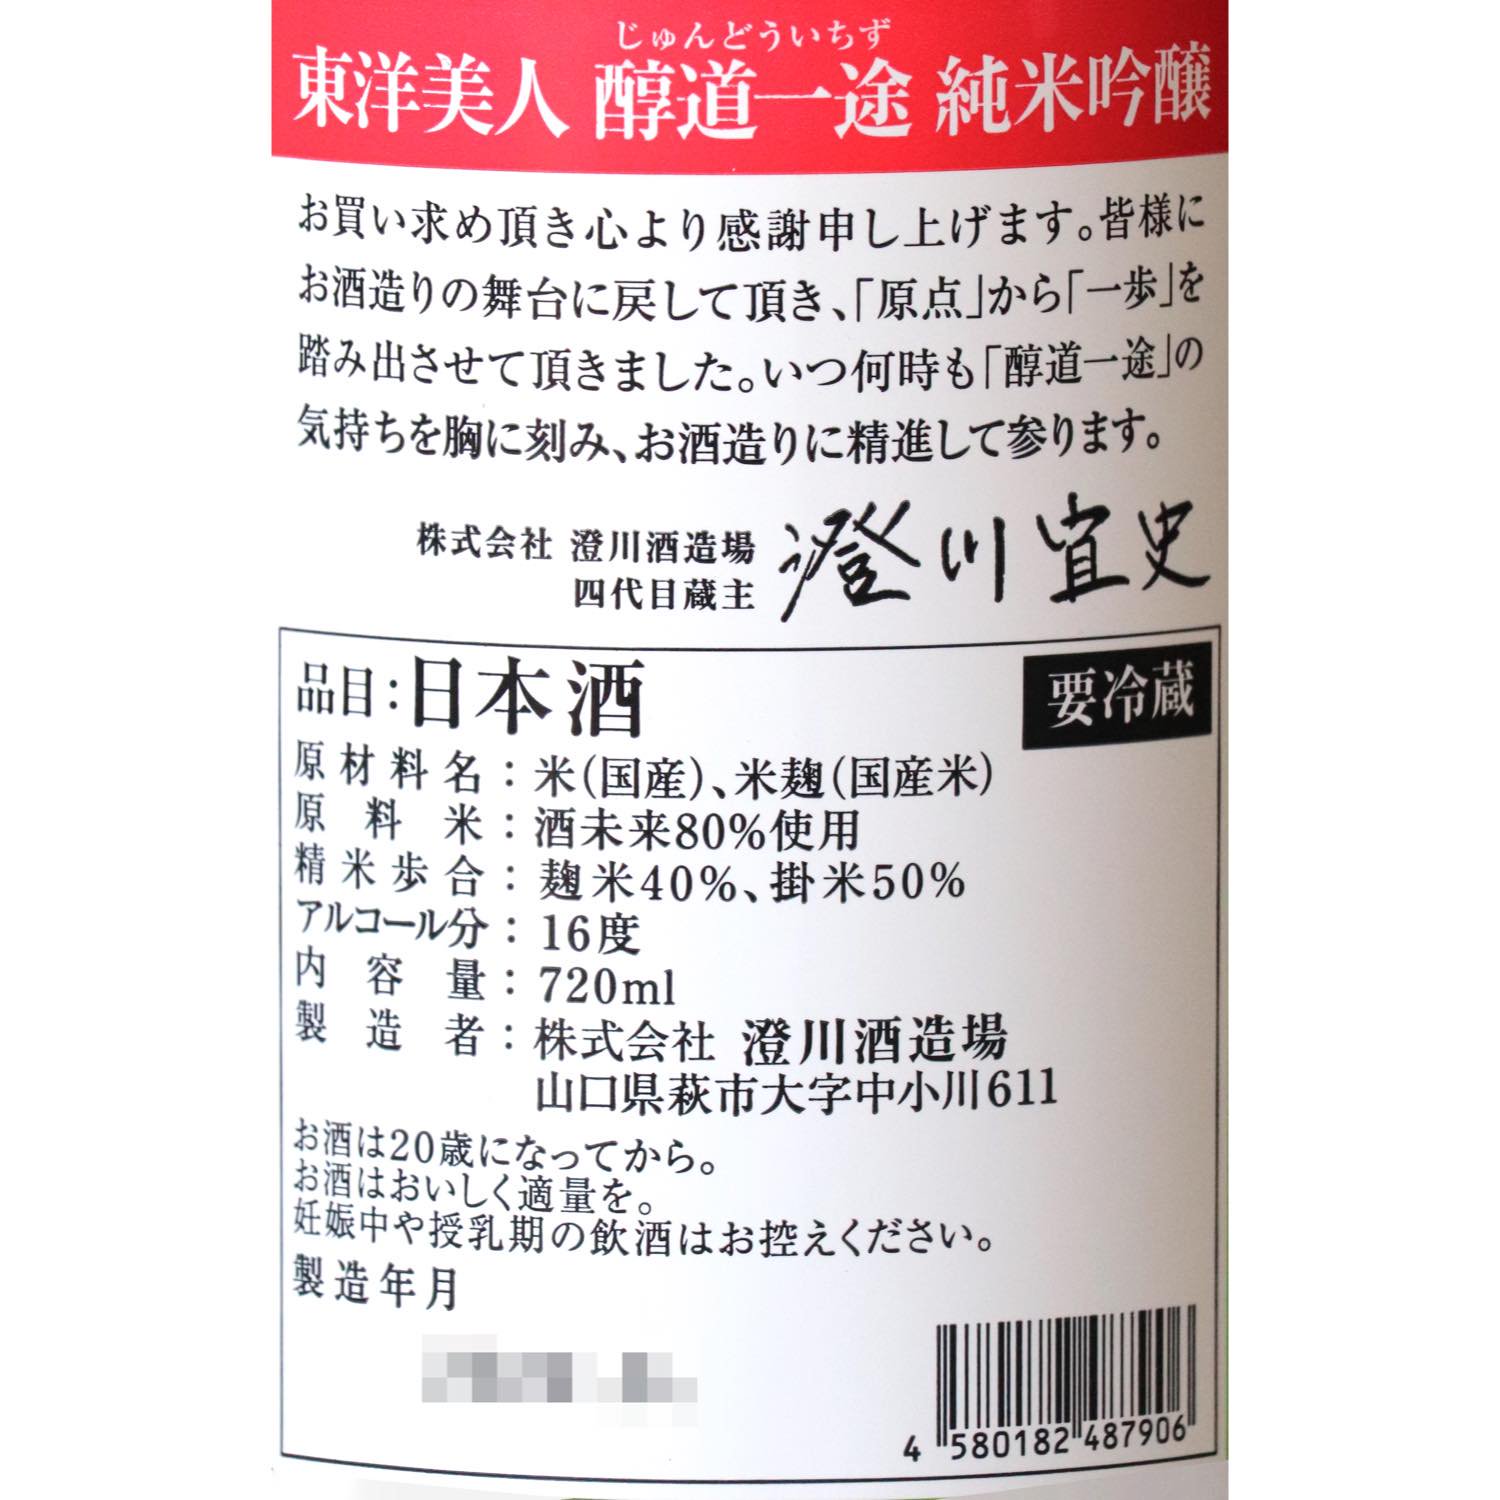 萩の鶴 真夏の猫 純米吟醸 720ml